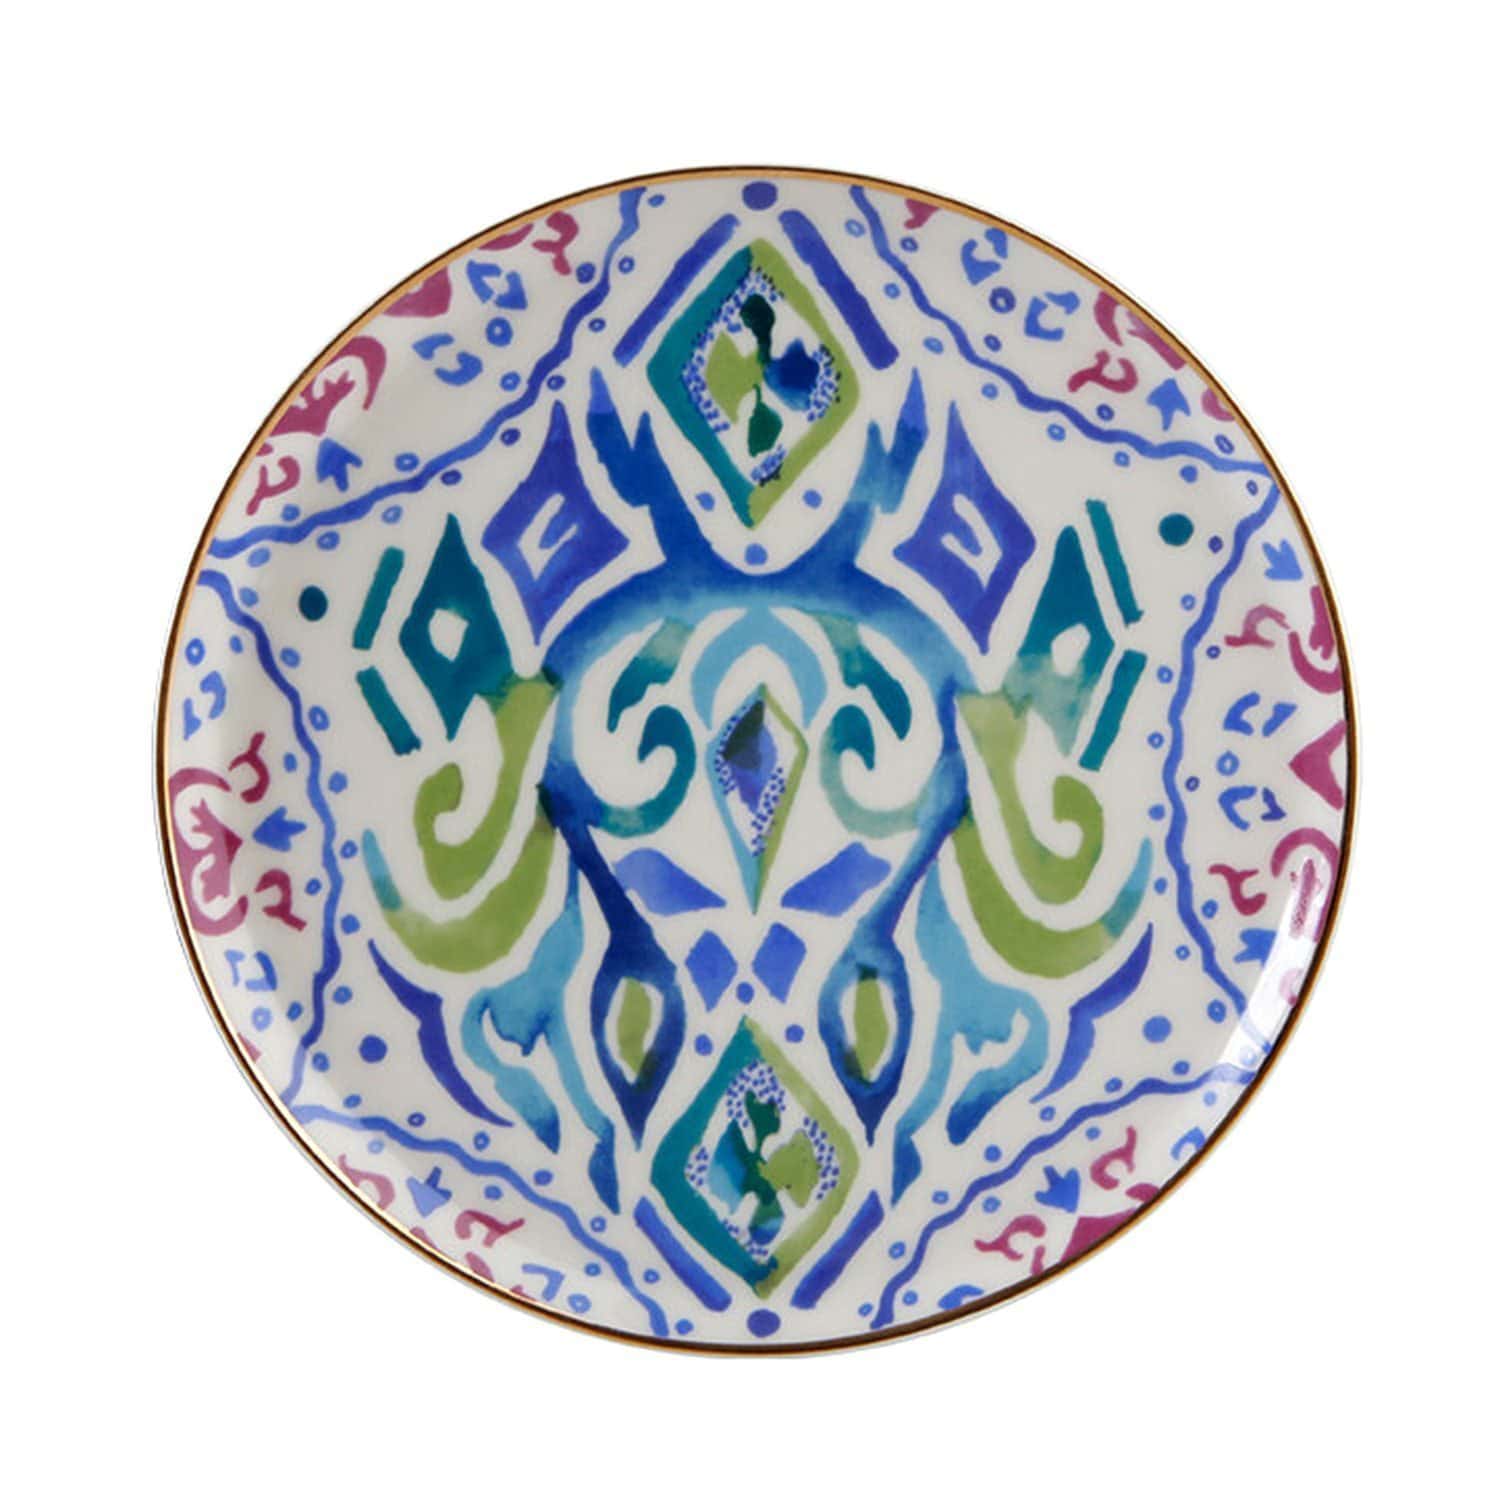 Porland Porselen بوش تصميم 1 20 سم لوحة - متعدد الألوان - 04ALM003314 - Jashanmal الرئيسية